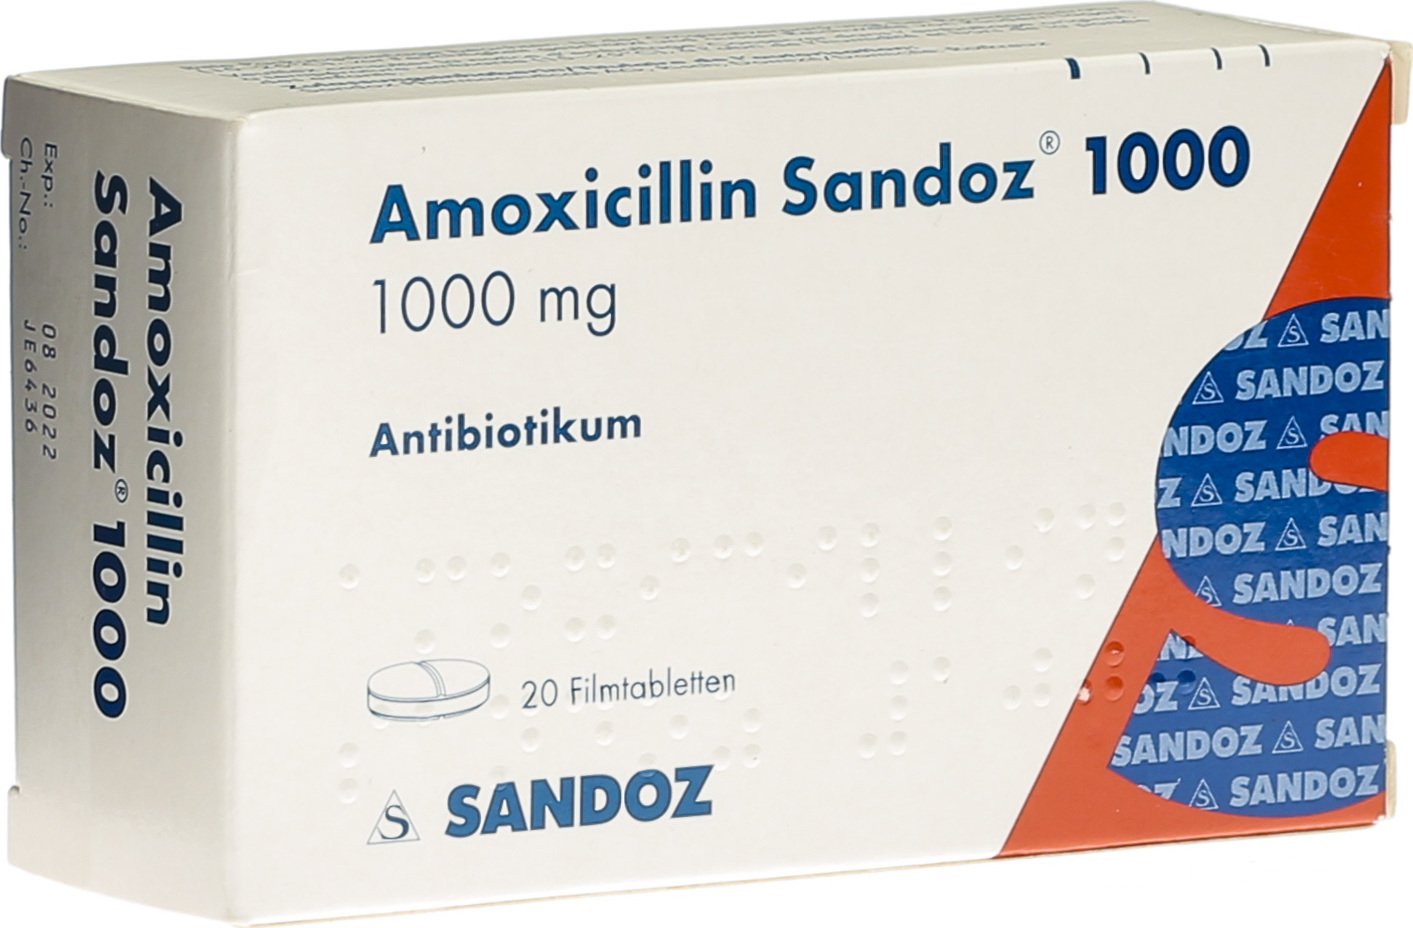 Amoxicillin Sandoz Filmtabletten 1000mg 20 Stück in der Adler Apotheke